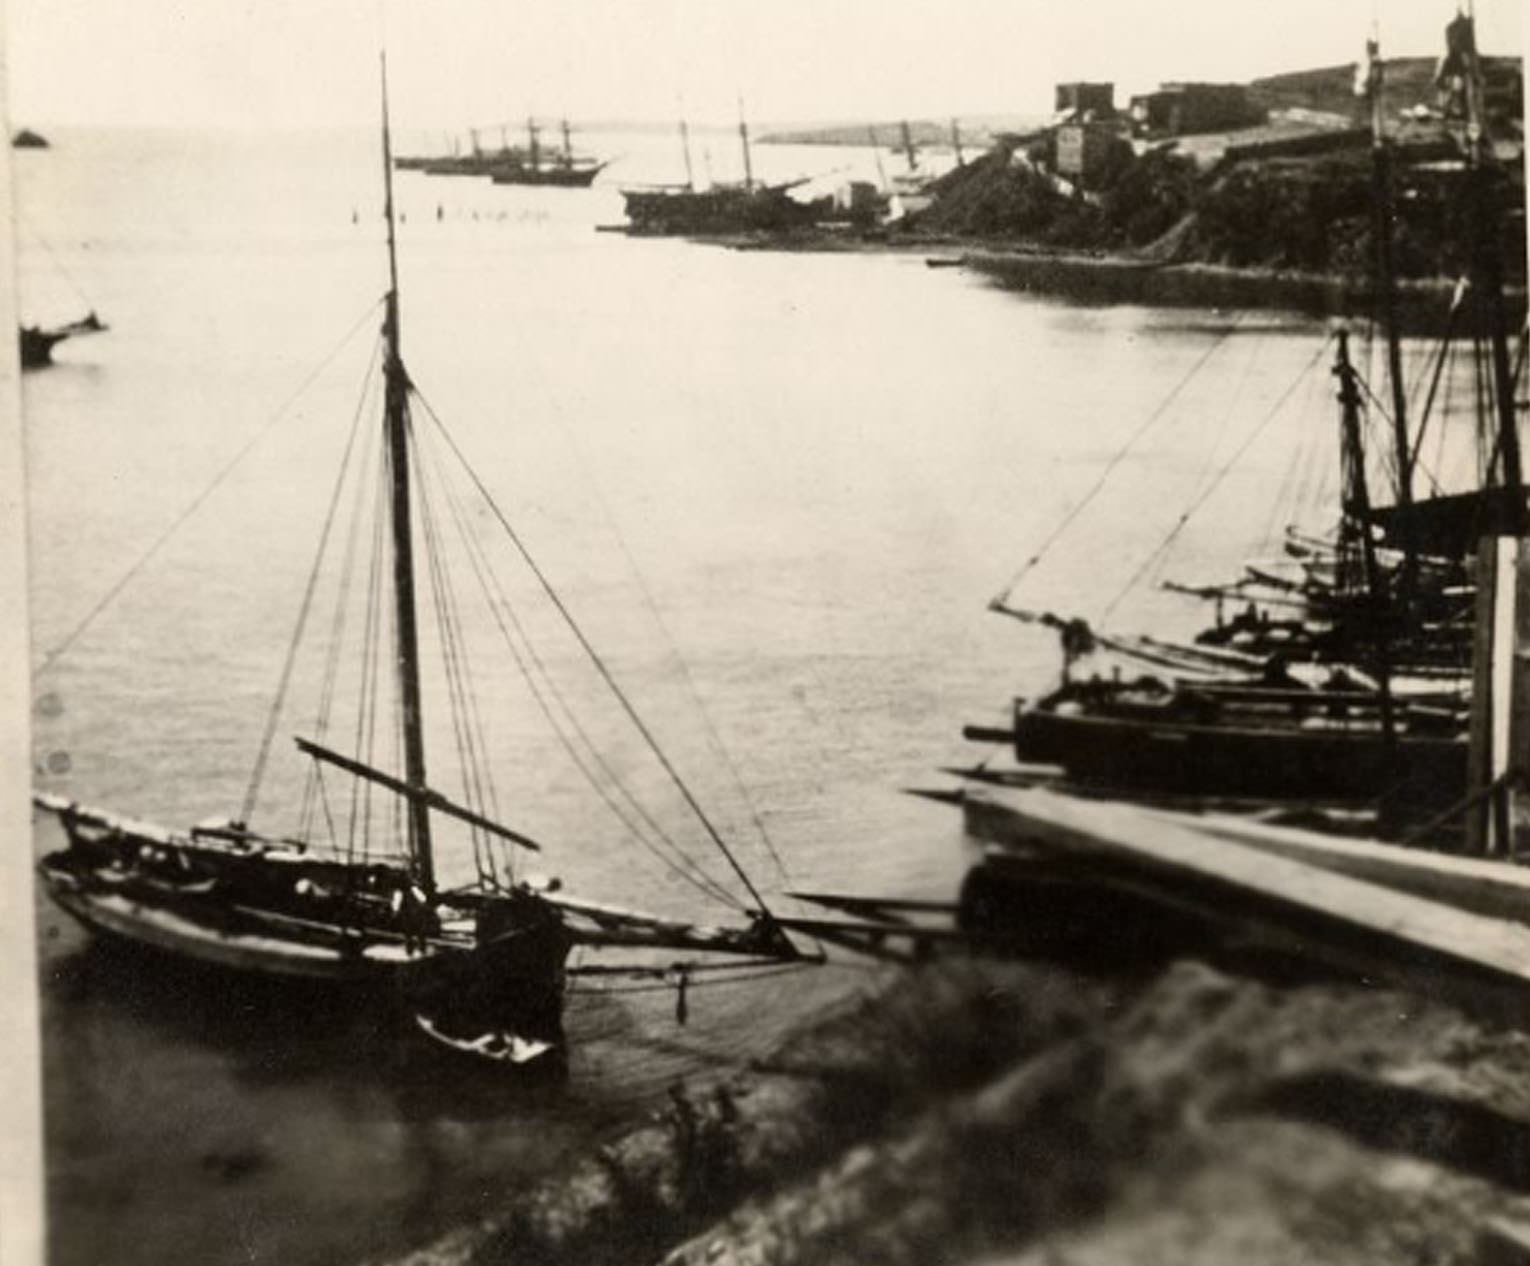 Sailing ship at wharf, 1857